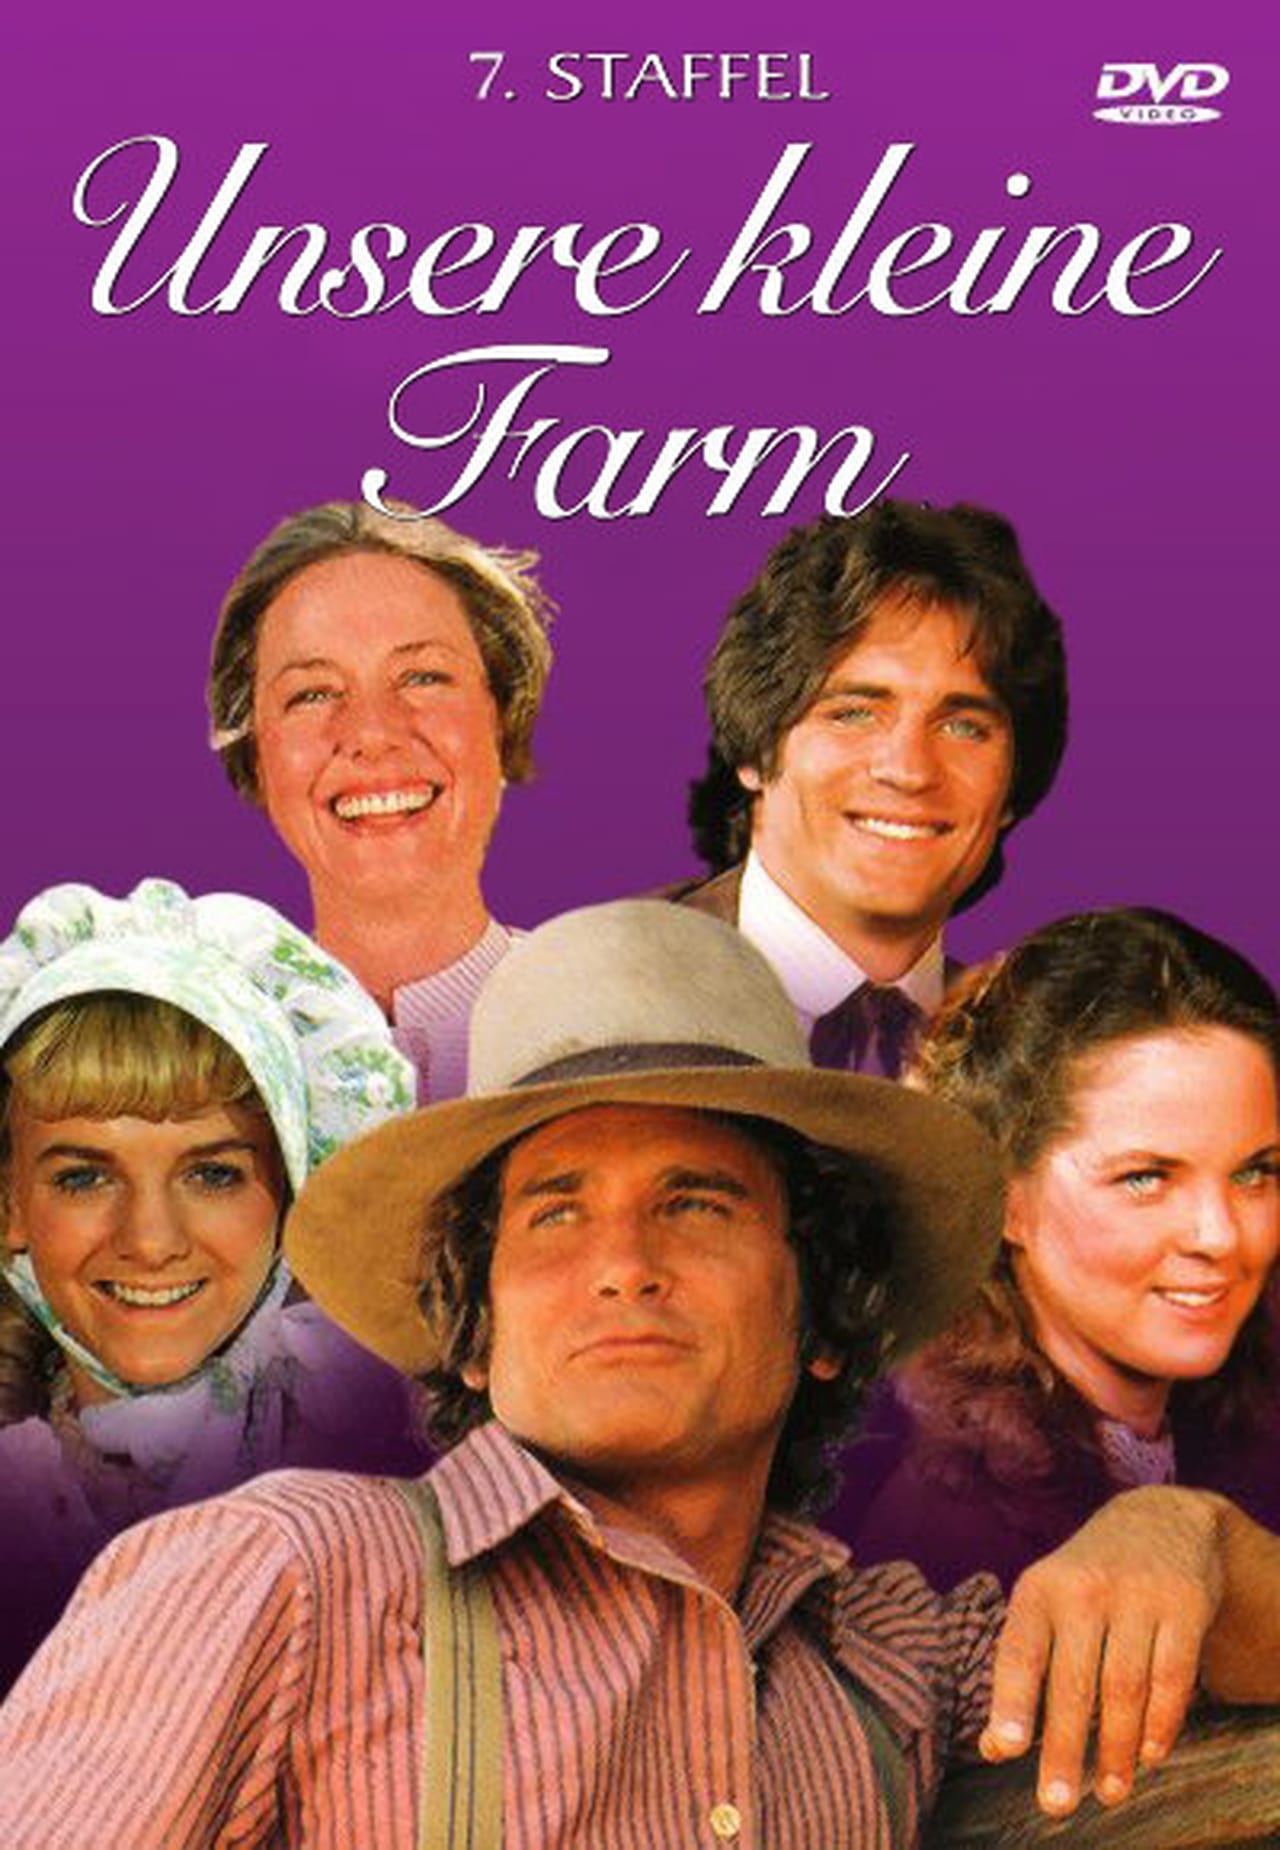 Little House On The Prairie (1980)